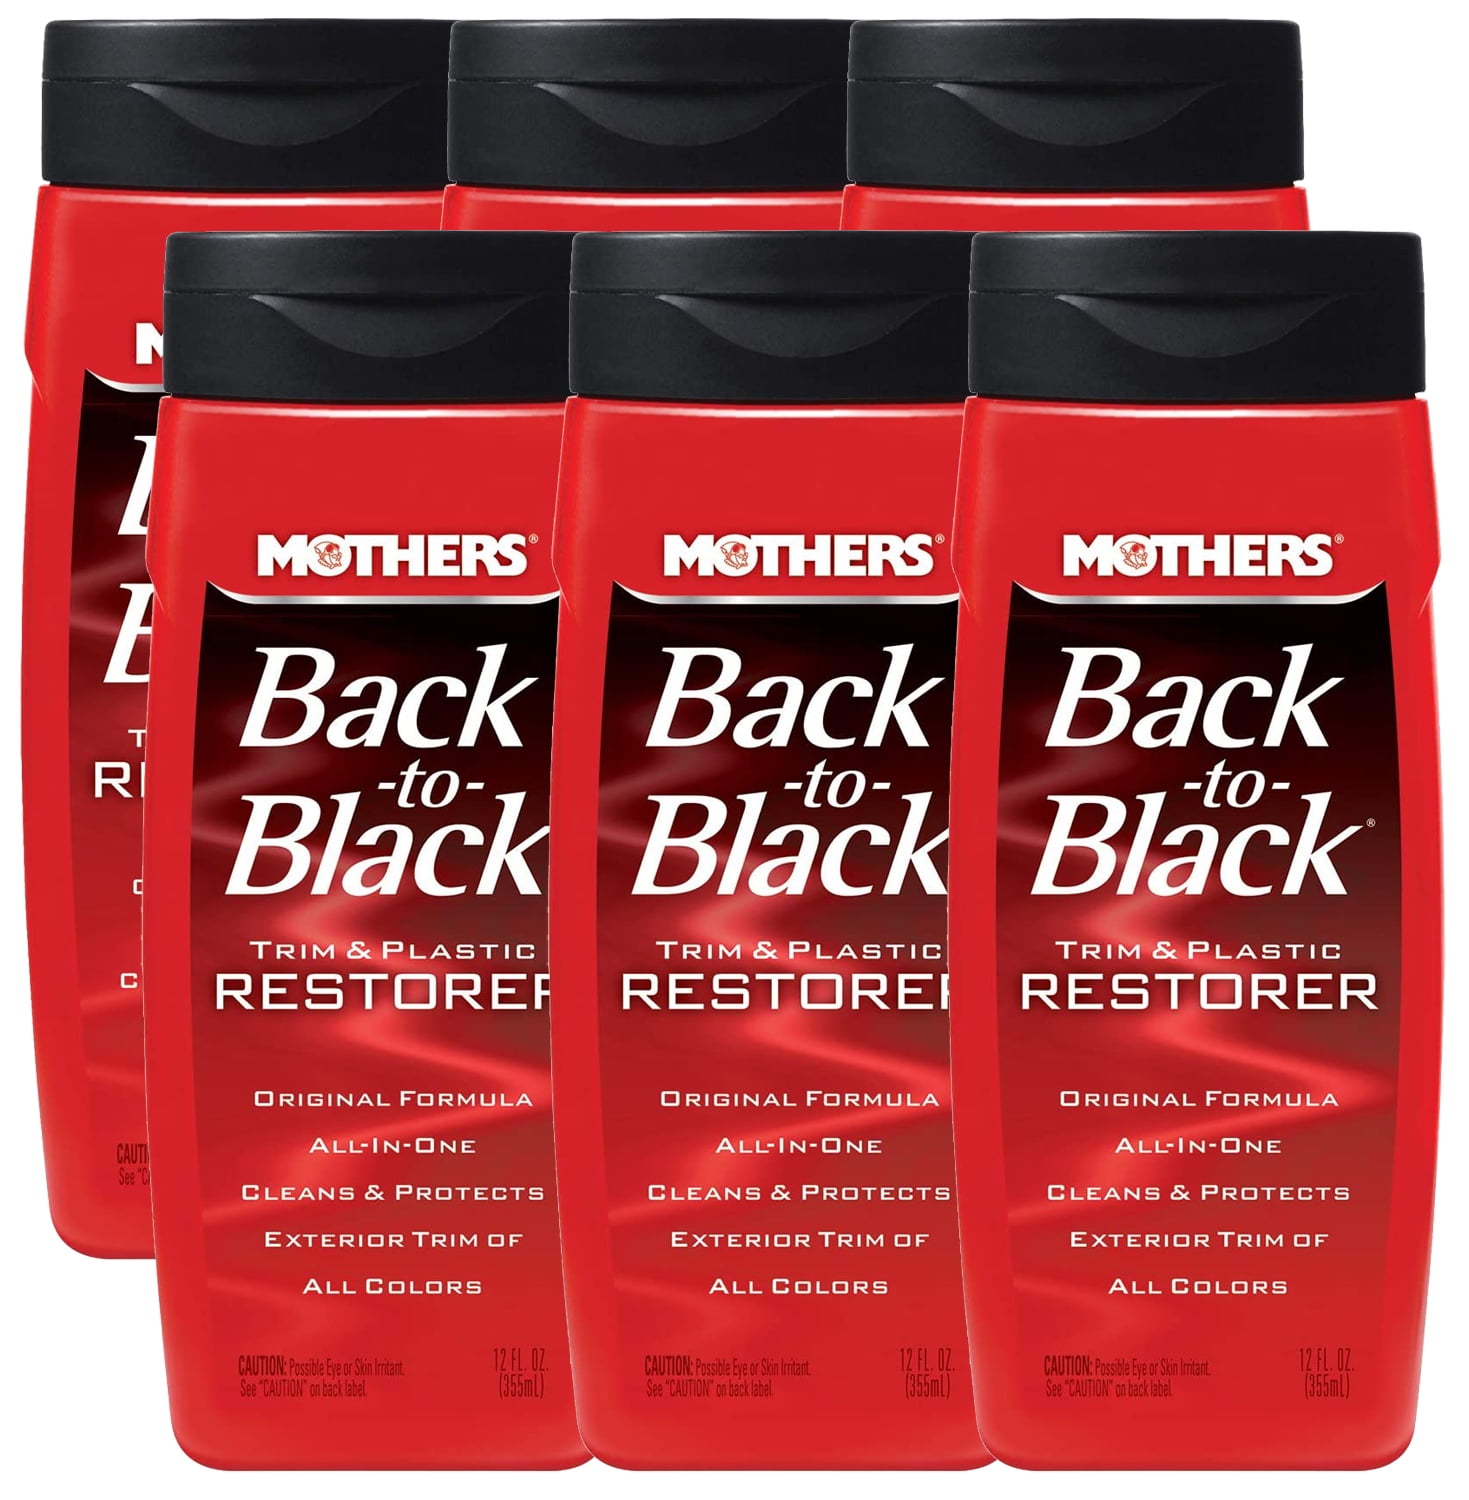 Mothers 06112 Back-to-Black Plastic and Trim Restorer - 12 oz.